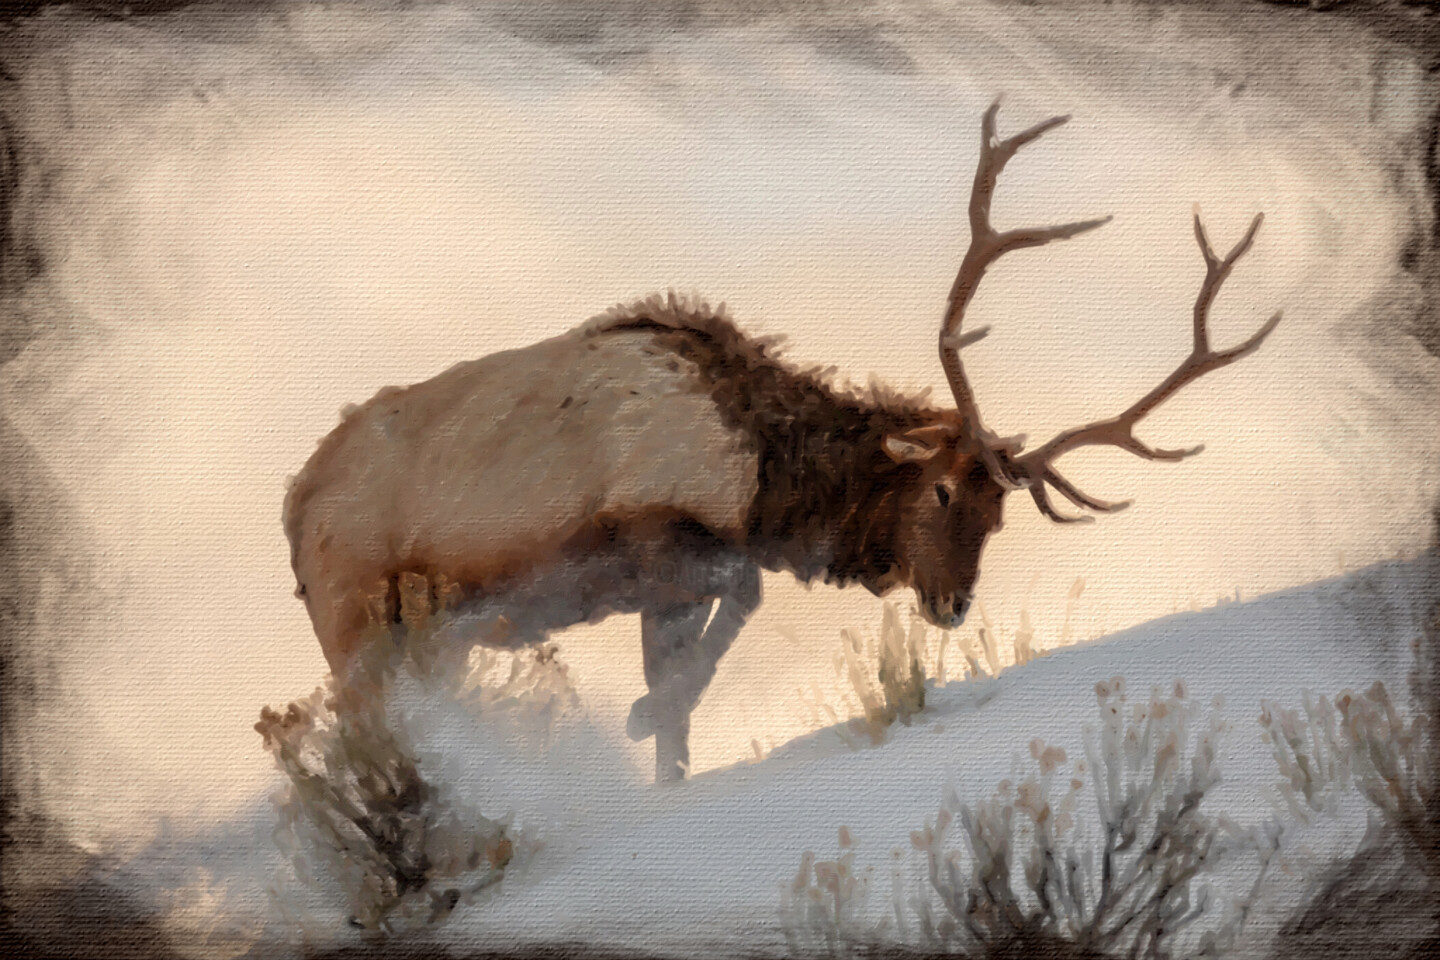 Elk Paintings